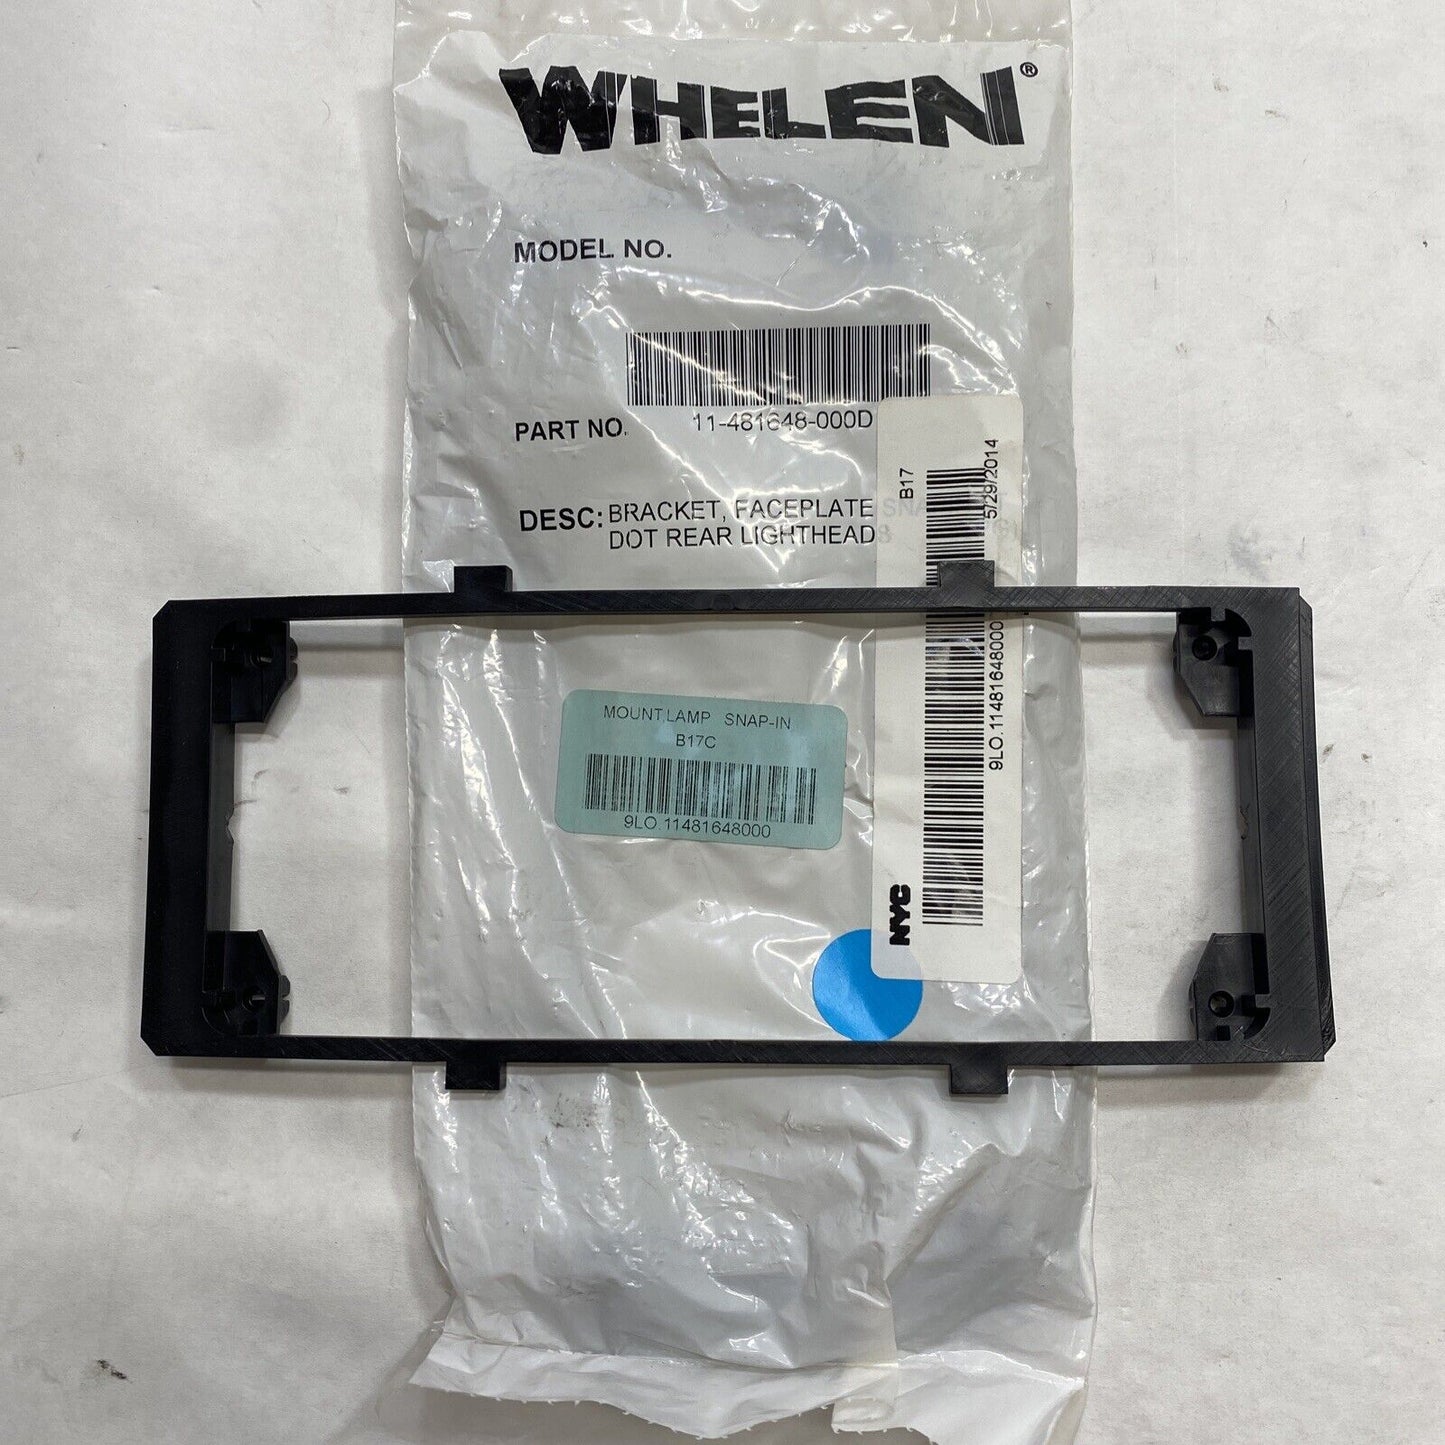 New Whelen 11-481648-000D Snap-In Nylon Mounting Bracket for Rear Lightheads